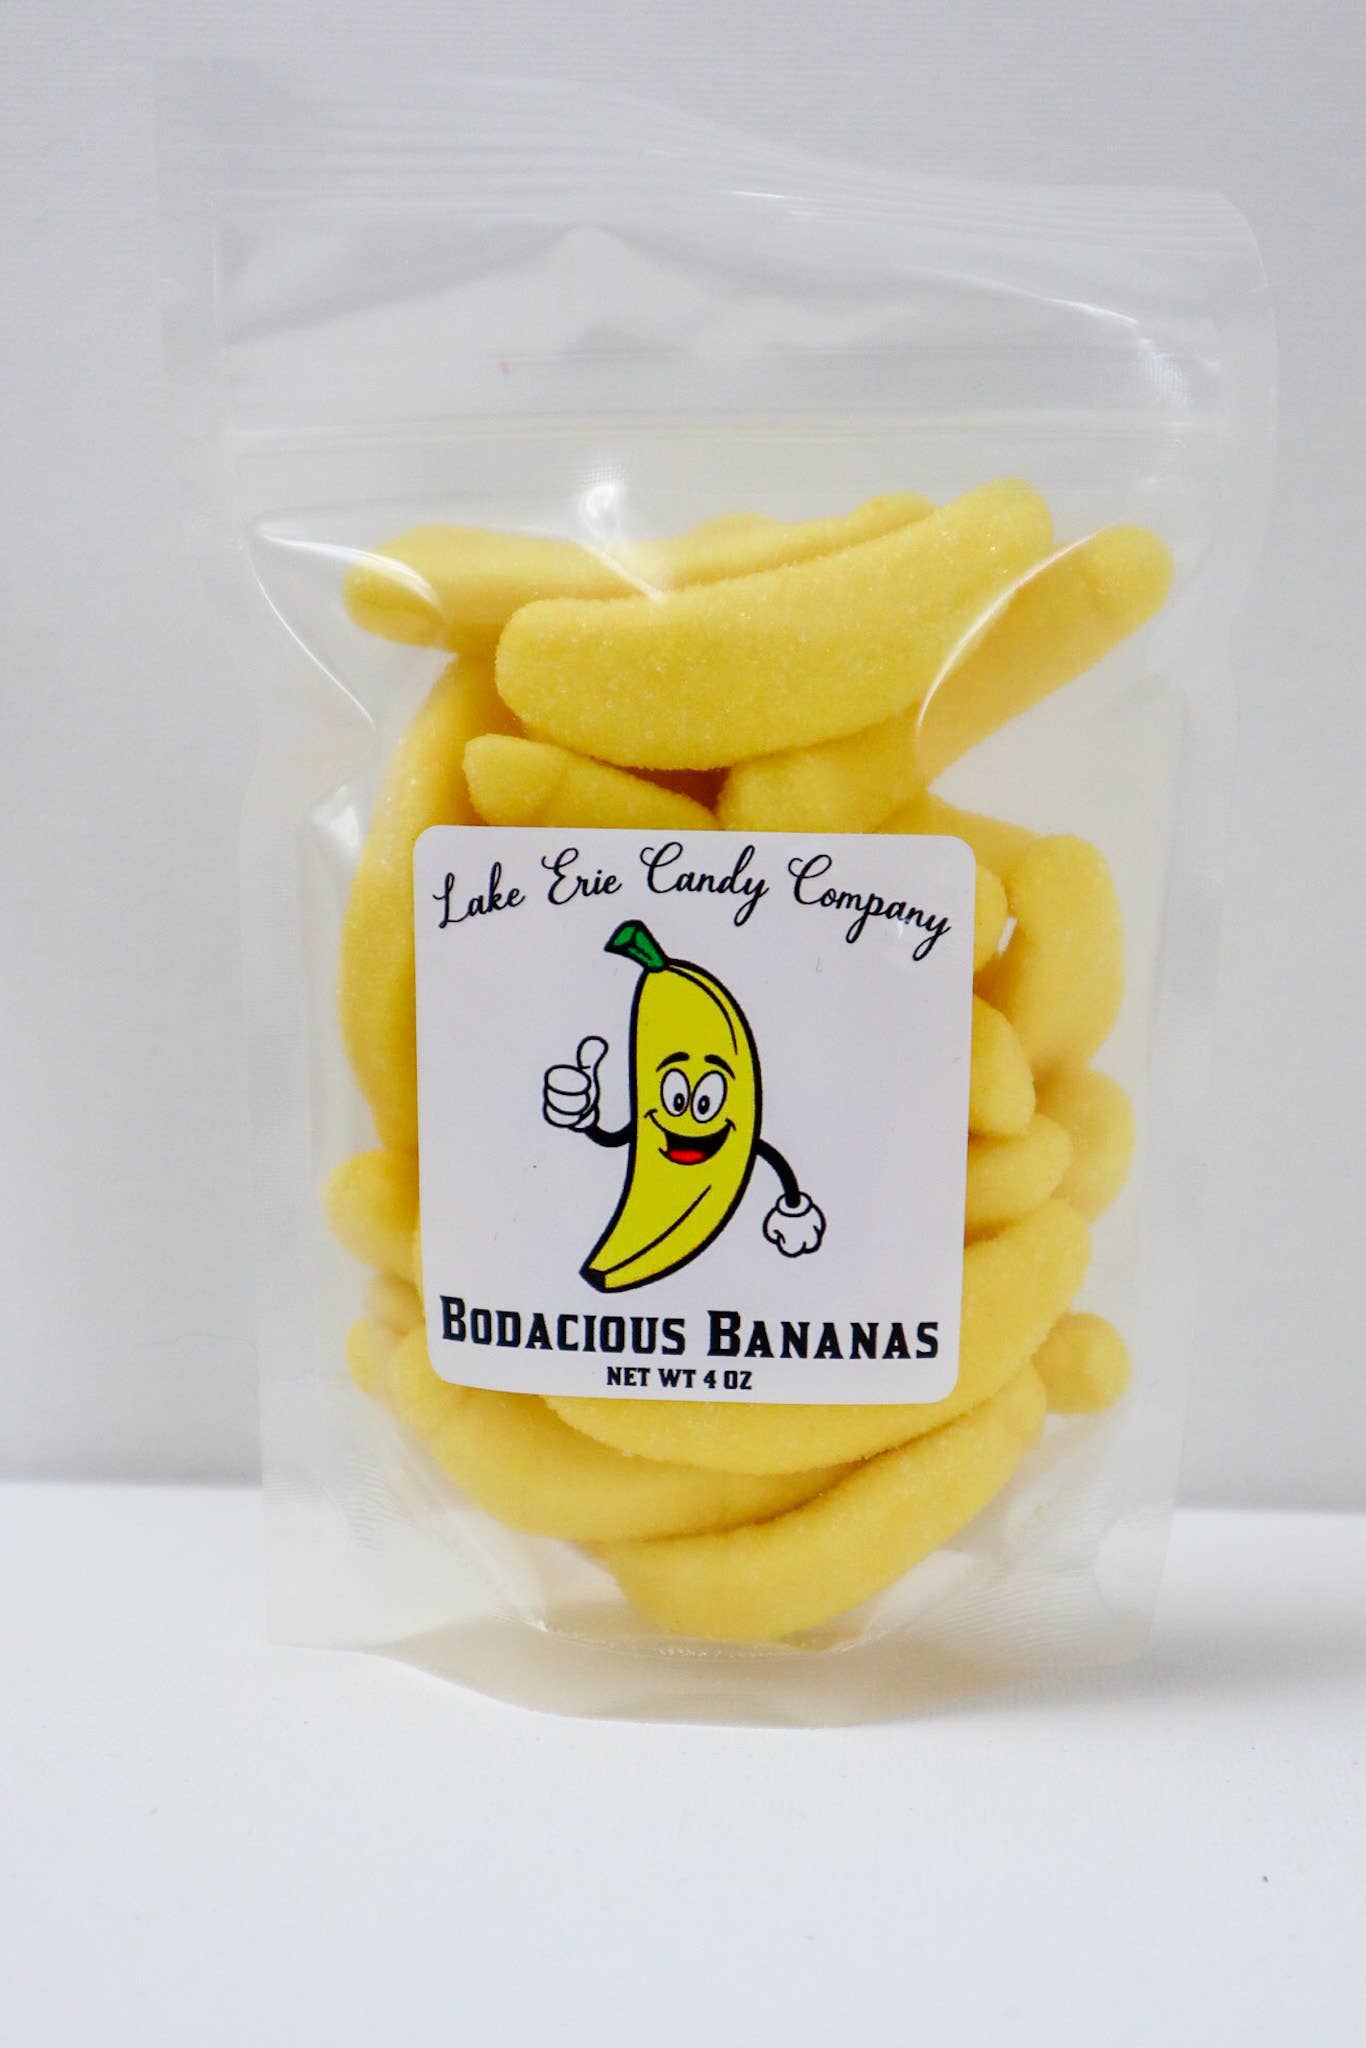 Bodacious Bananas